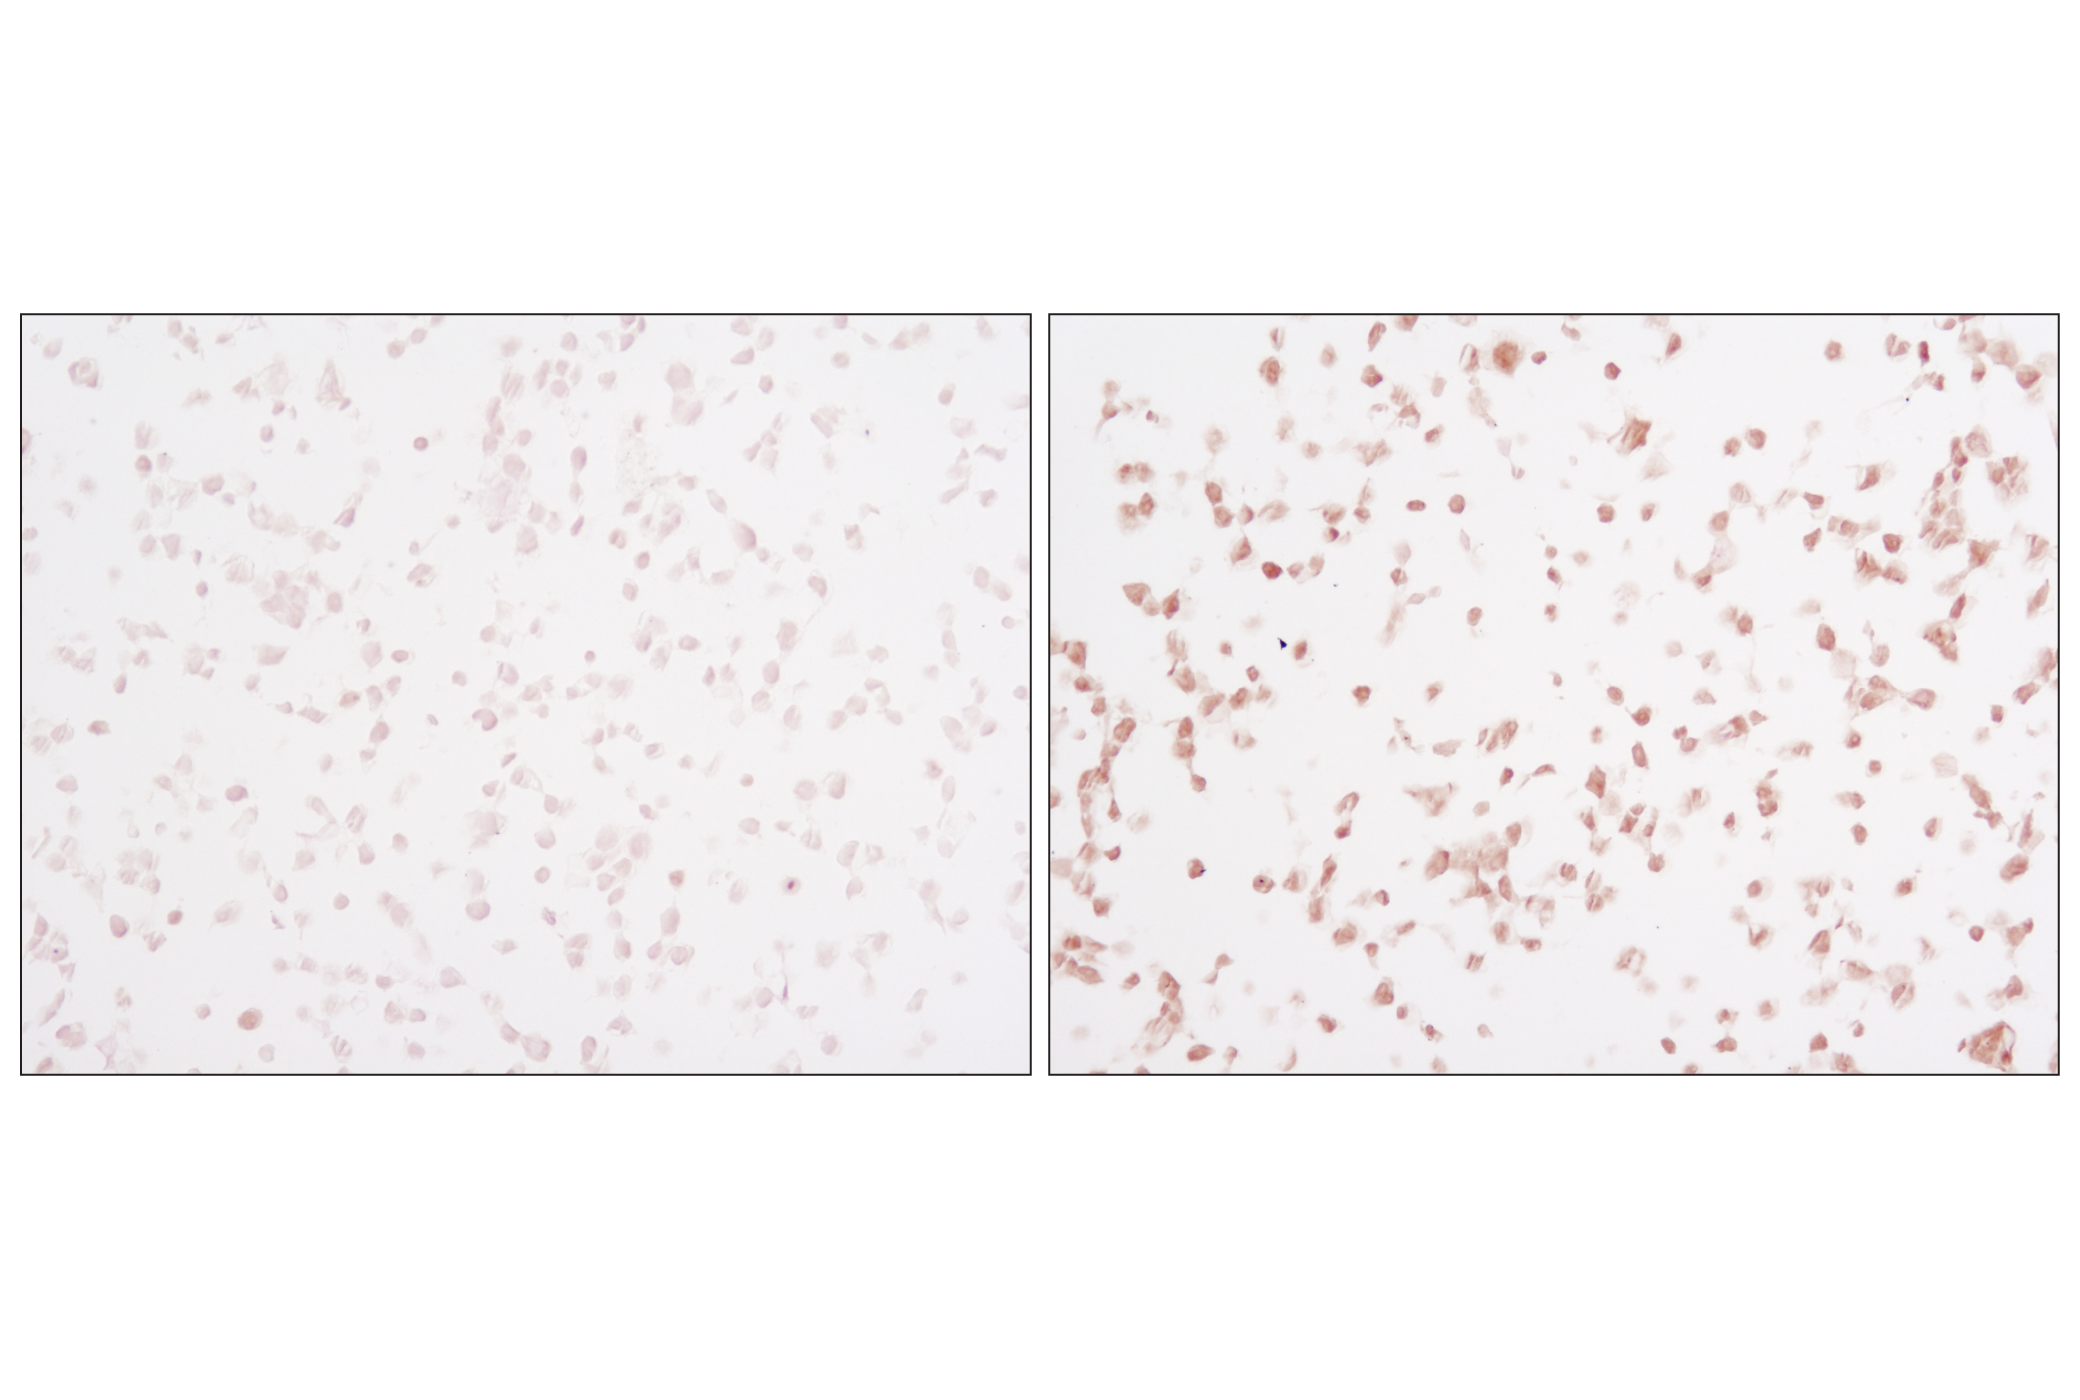  Image 33: Phospho-Tau (Ser214/T217) Signaling Antibody Sampler Kit